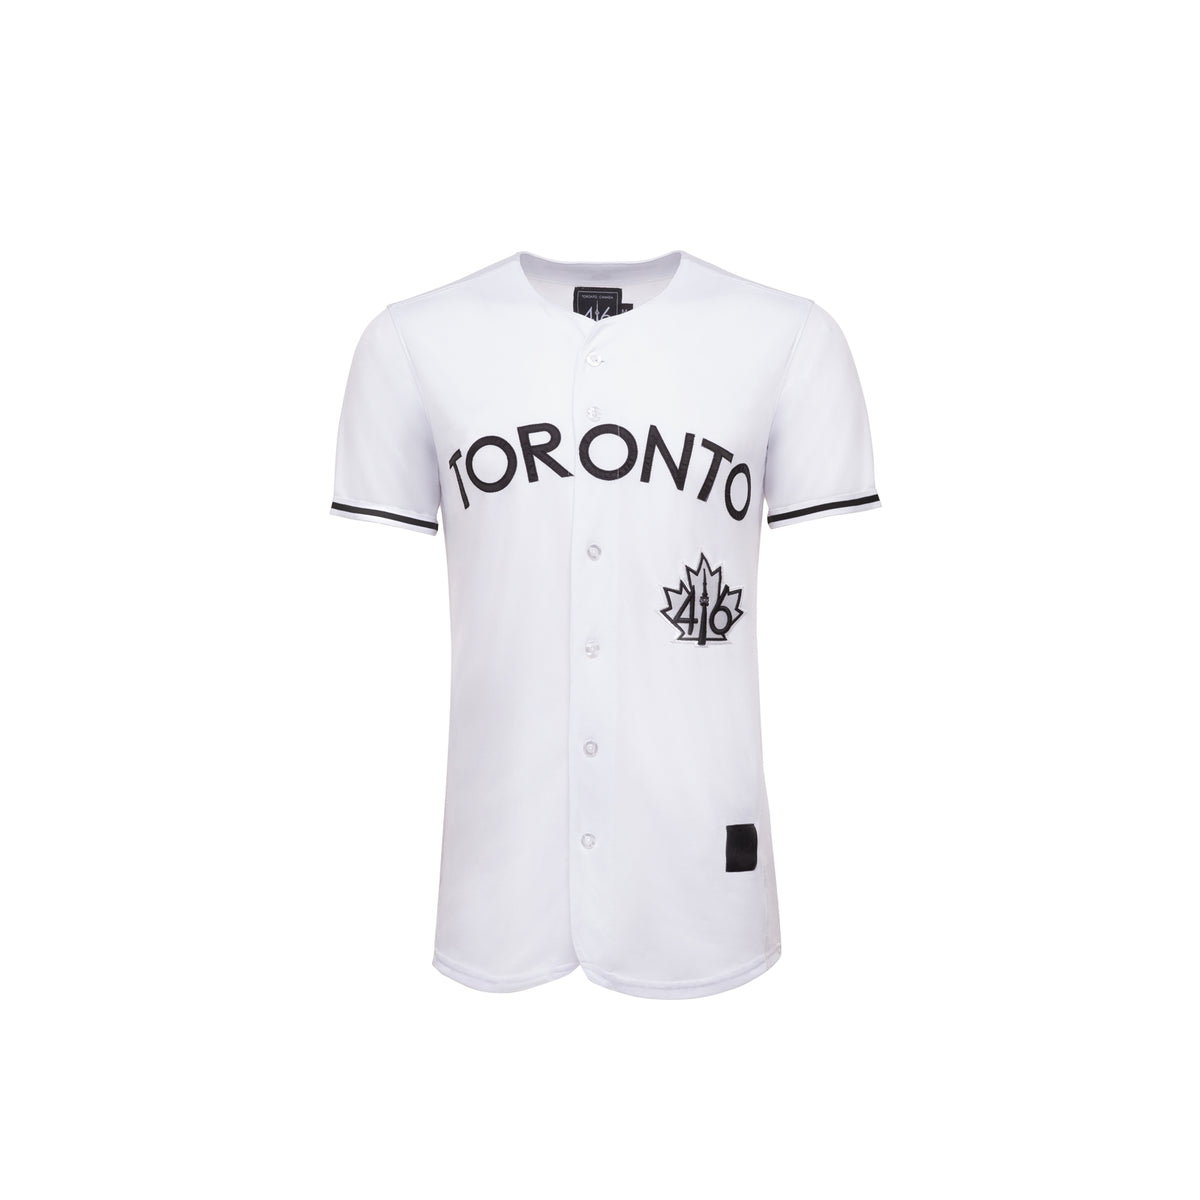 416 Toronto Baseball Jersey - Black – 416 Company